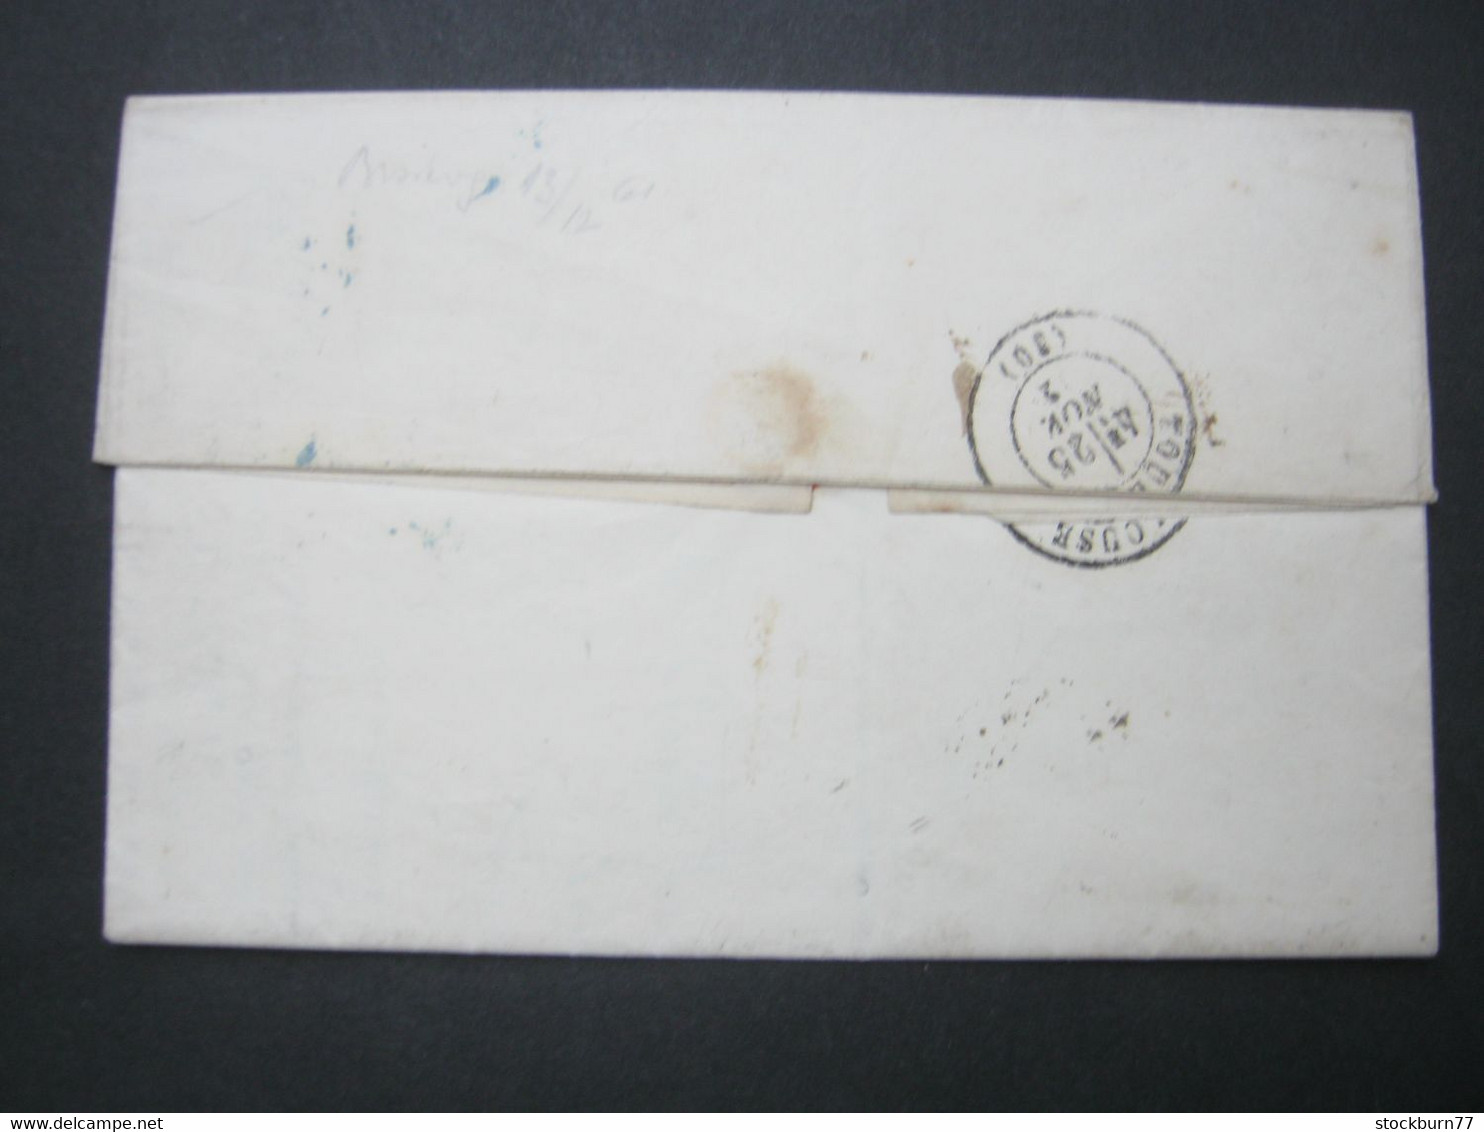 1872 , Brief Aus Garonne Mit Stempel     "P.L."   , Brief  Nach Frankreich - Covers & Documents